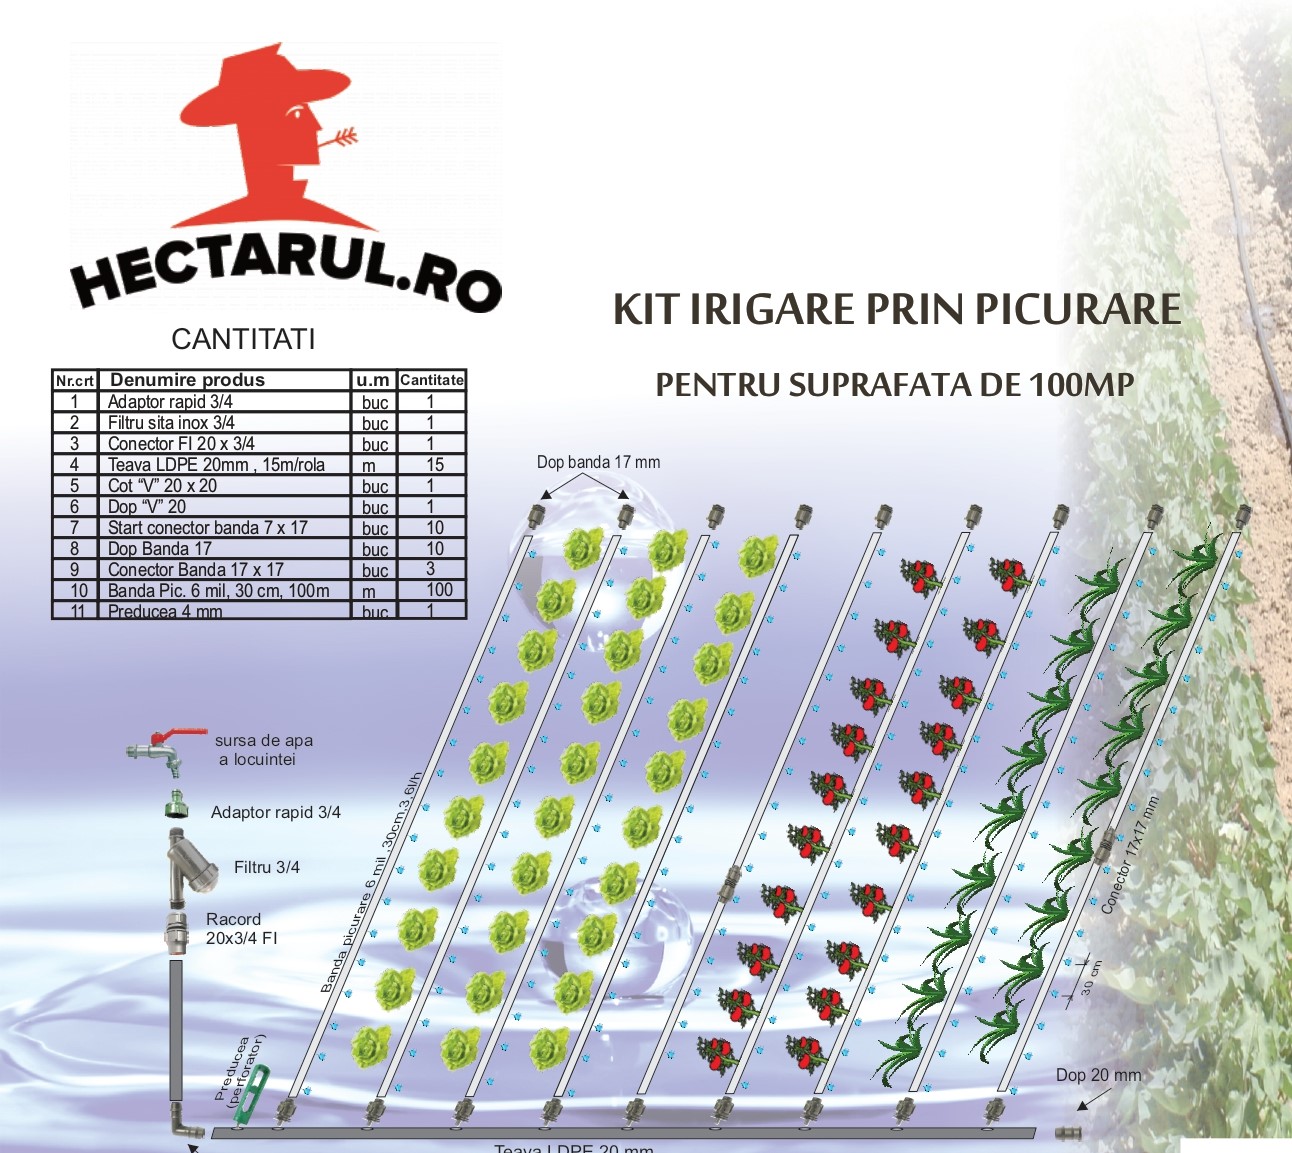 Sisteme complete de irigare - Kit irigare prin picurare 100 mp, hectarul.ro